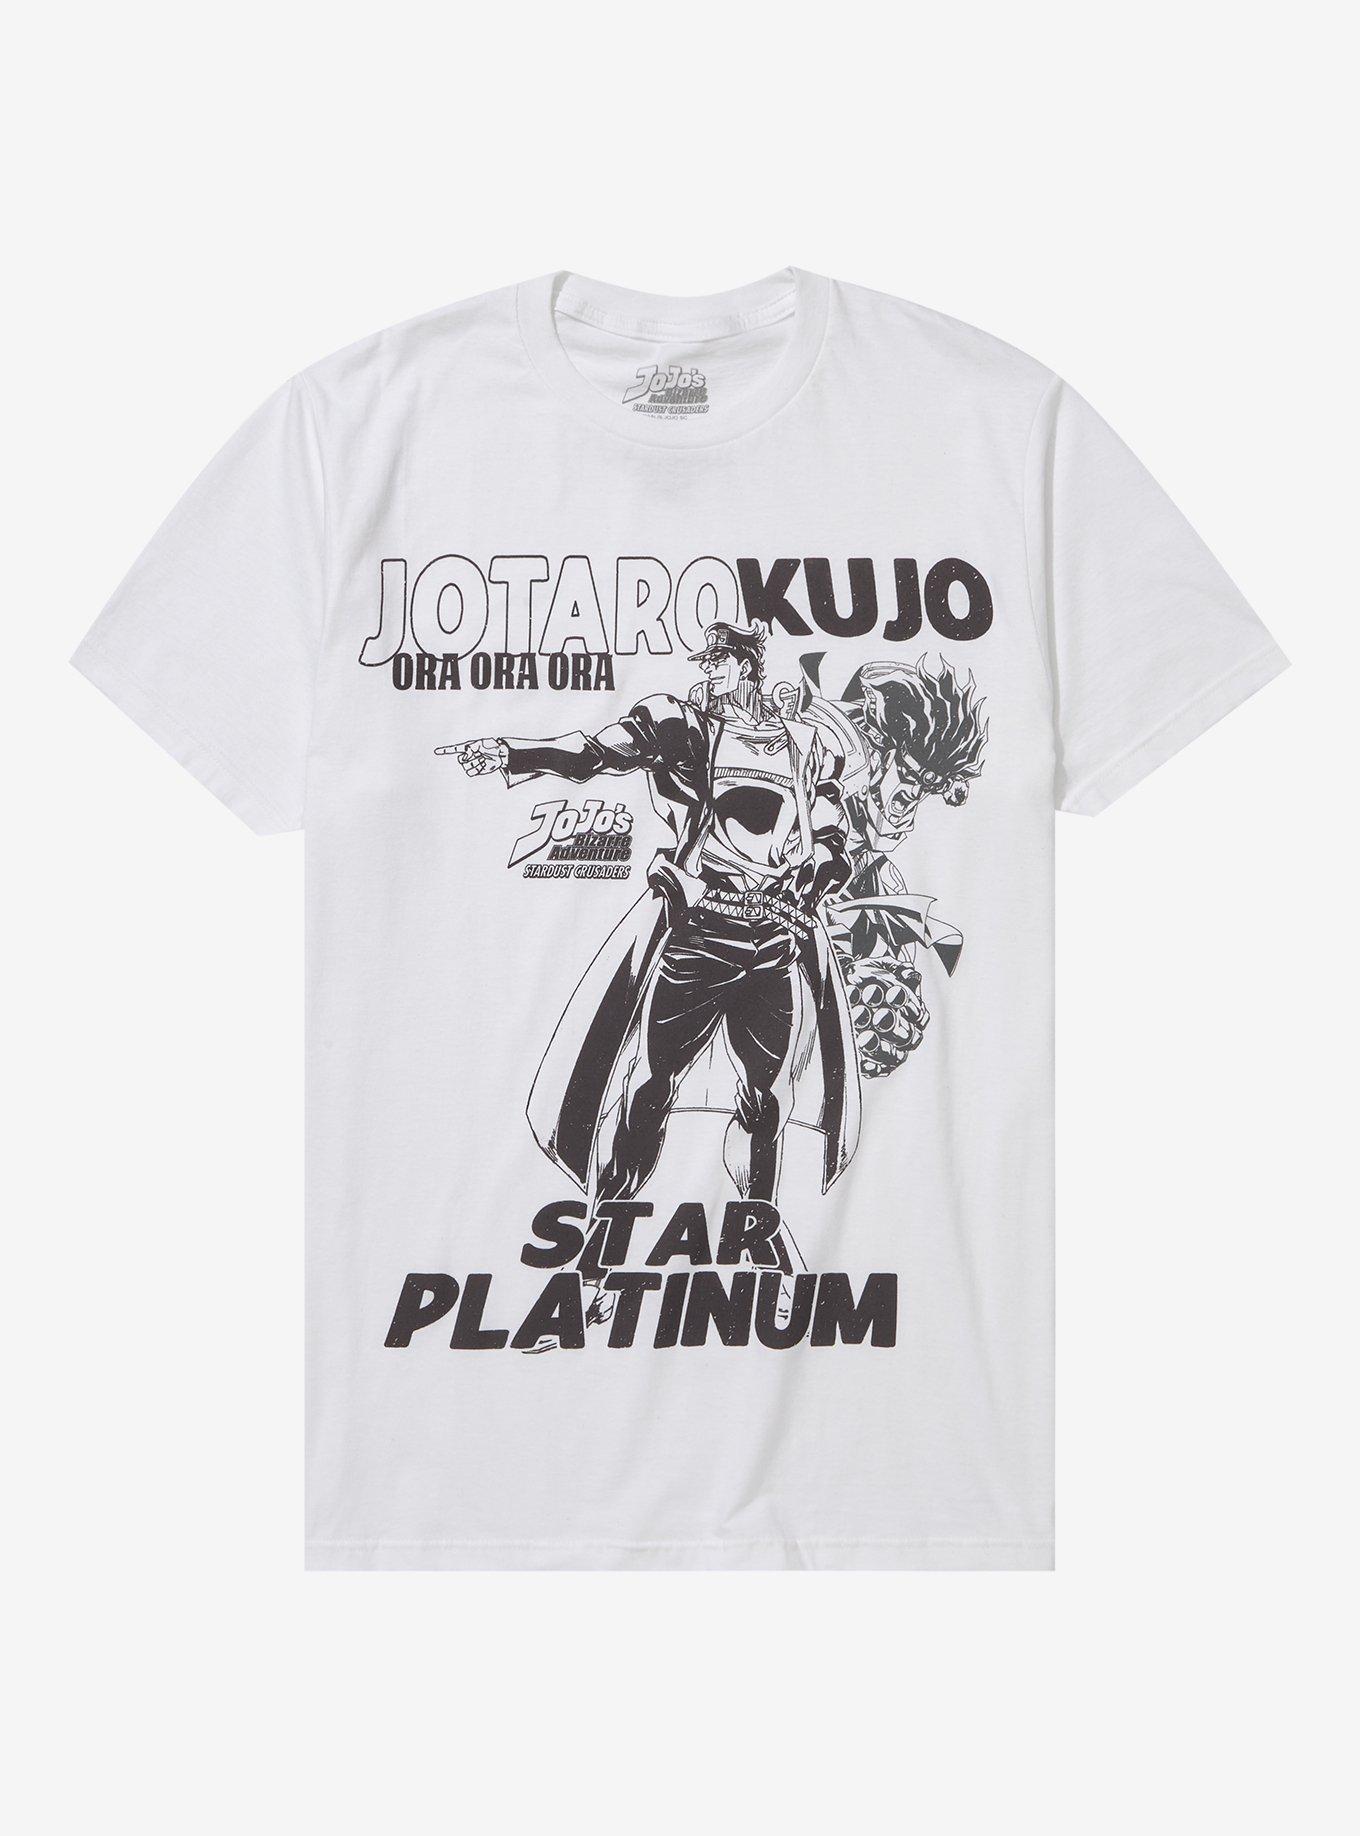 Jotaro Kujo and Star Platinum - Jojo - Magnet